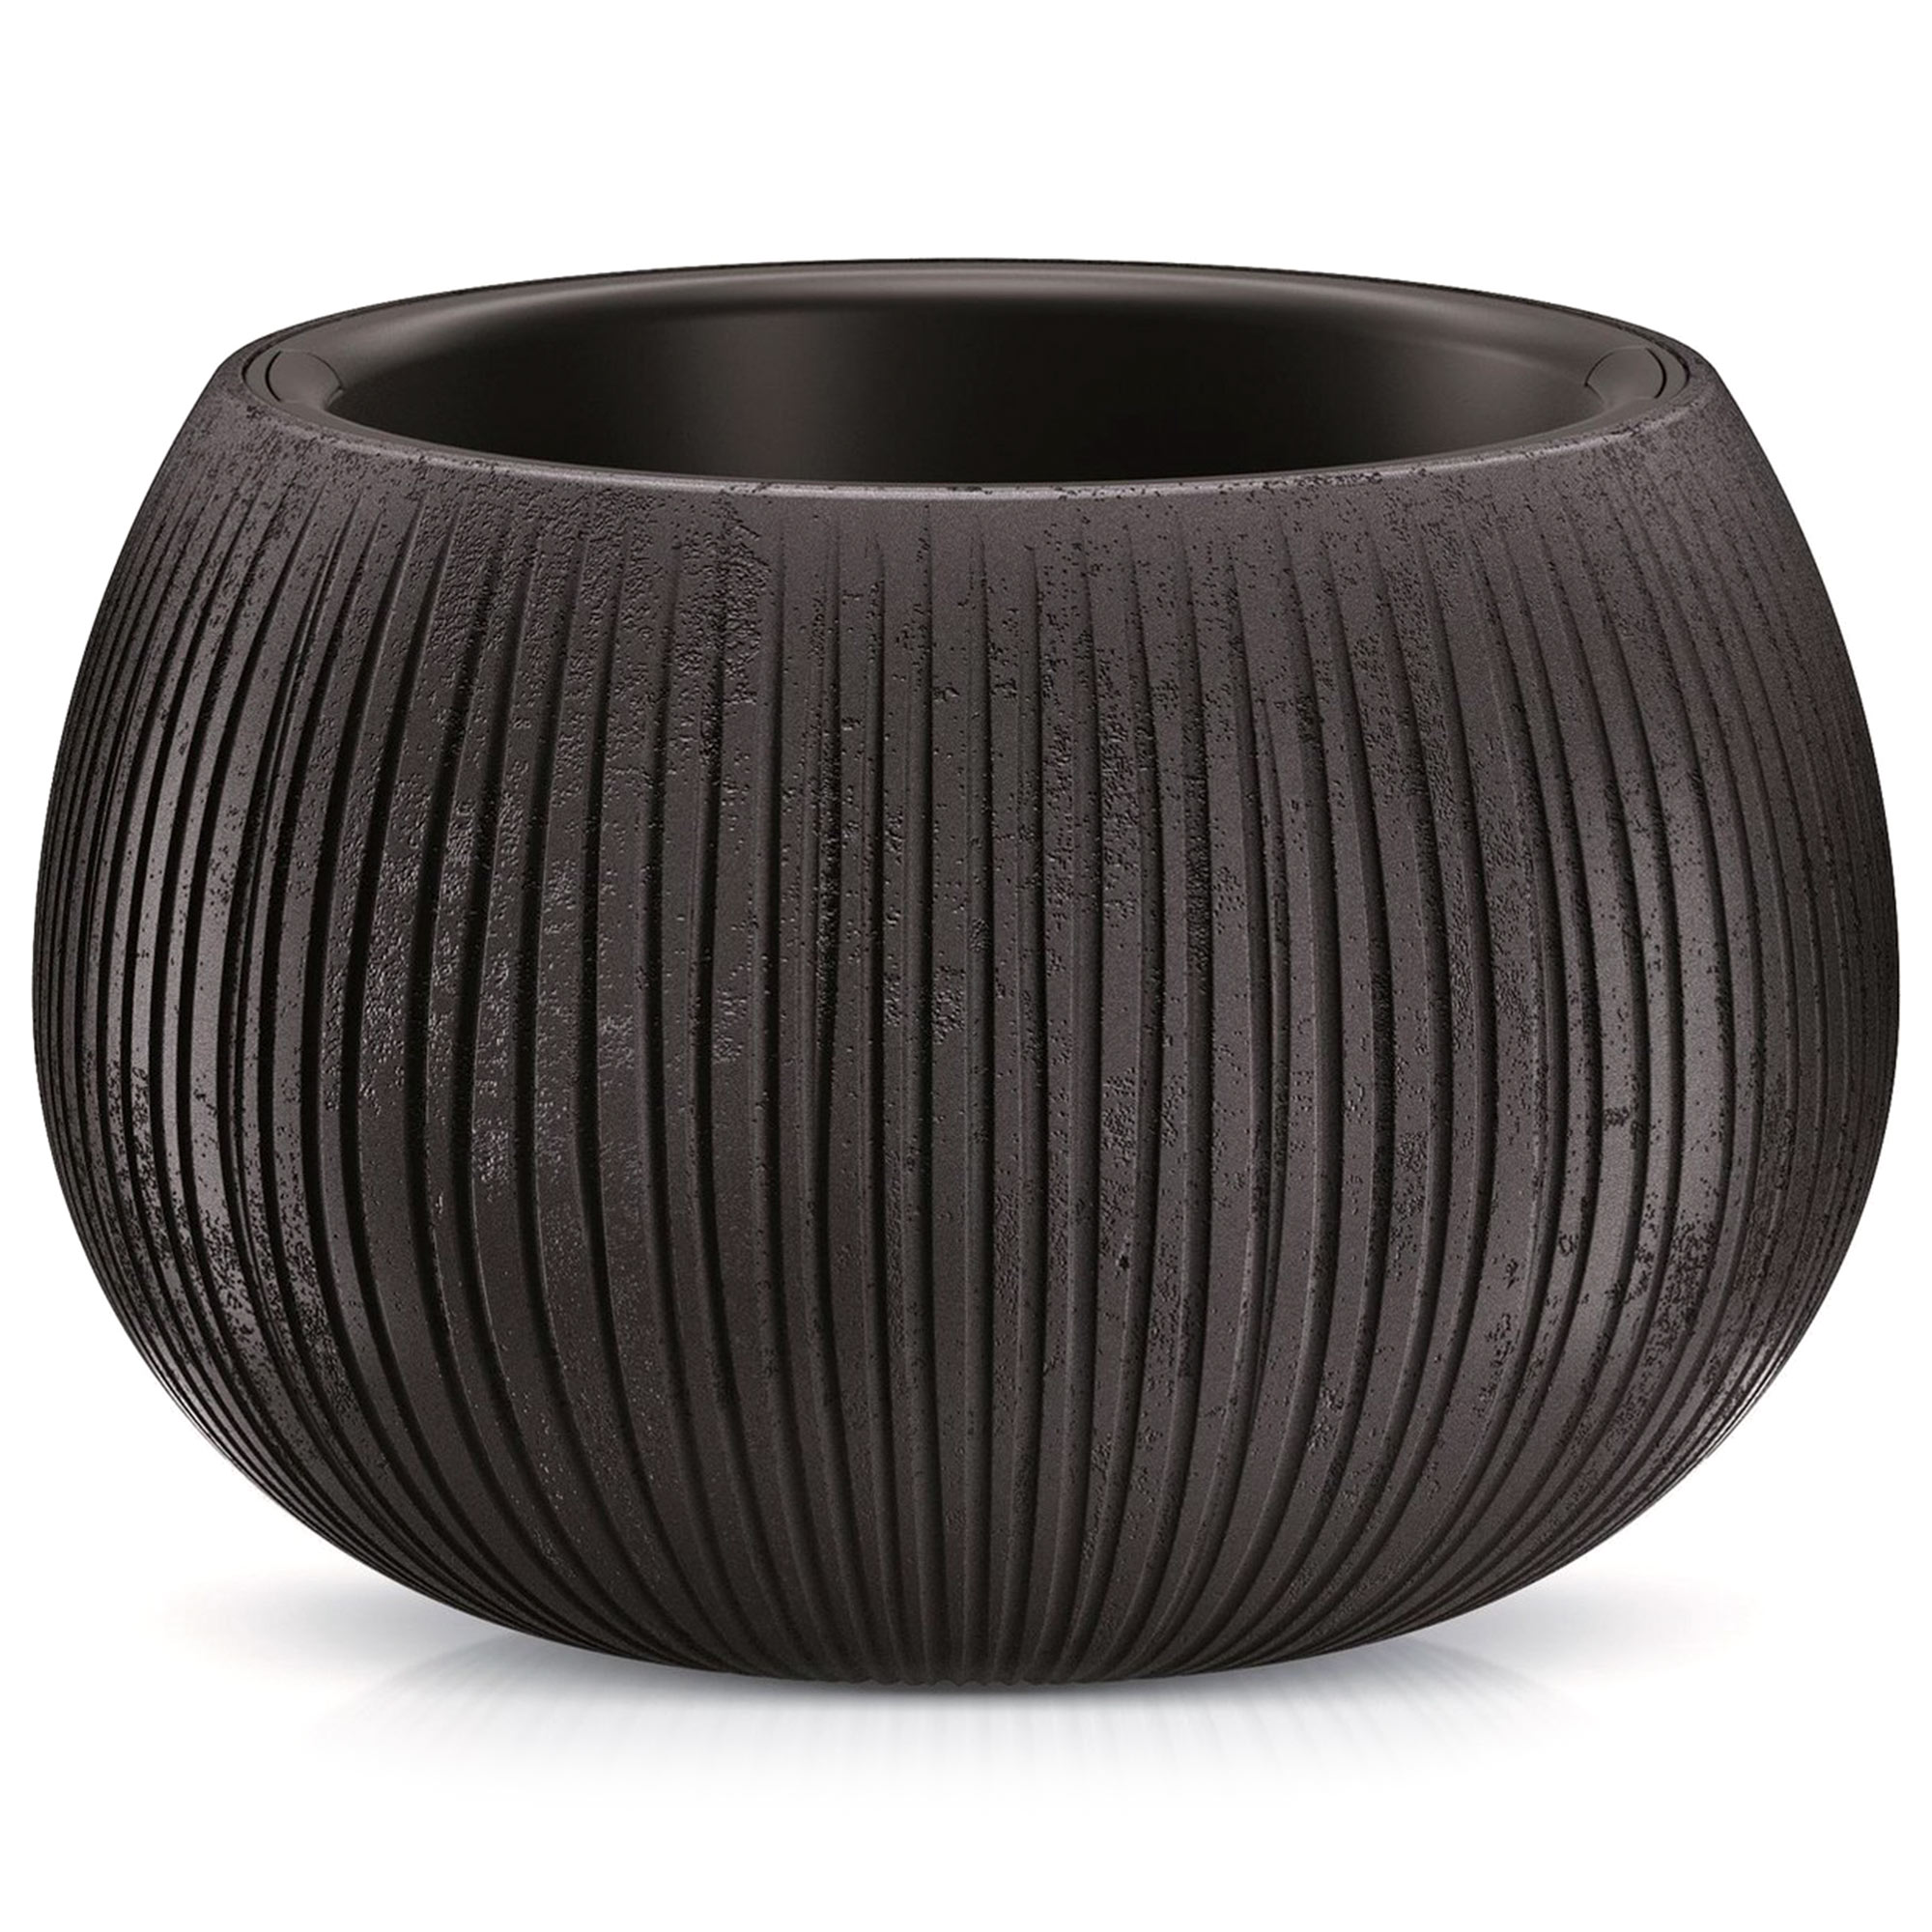 Кашпо Prosperplast со вставкой Beton Bowl черное 37 см, цвет черный - фото 1